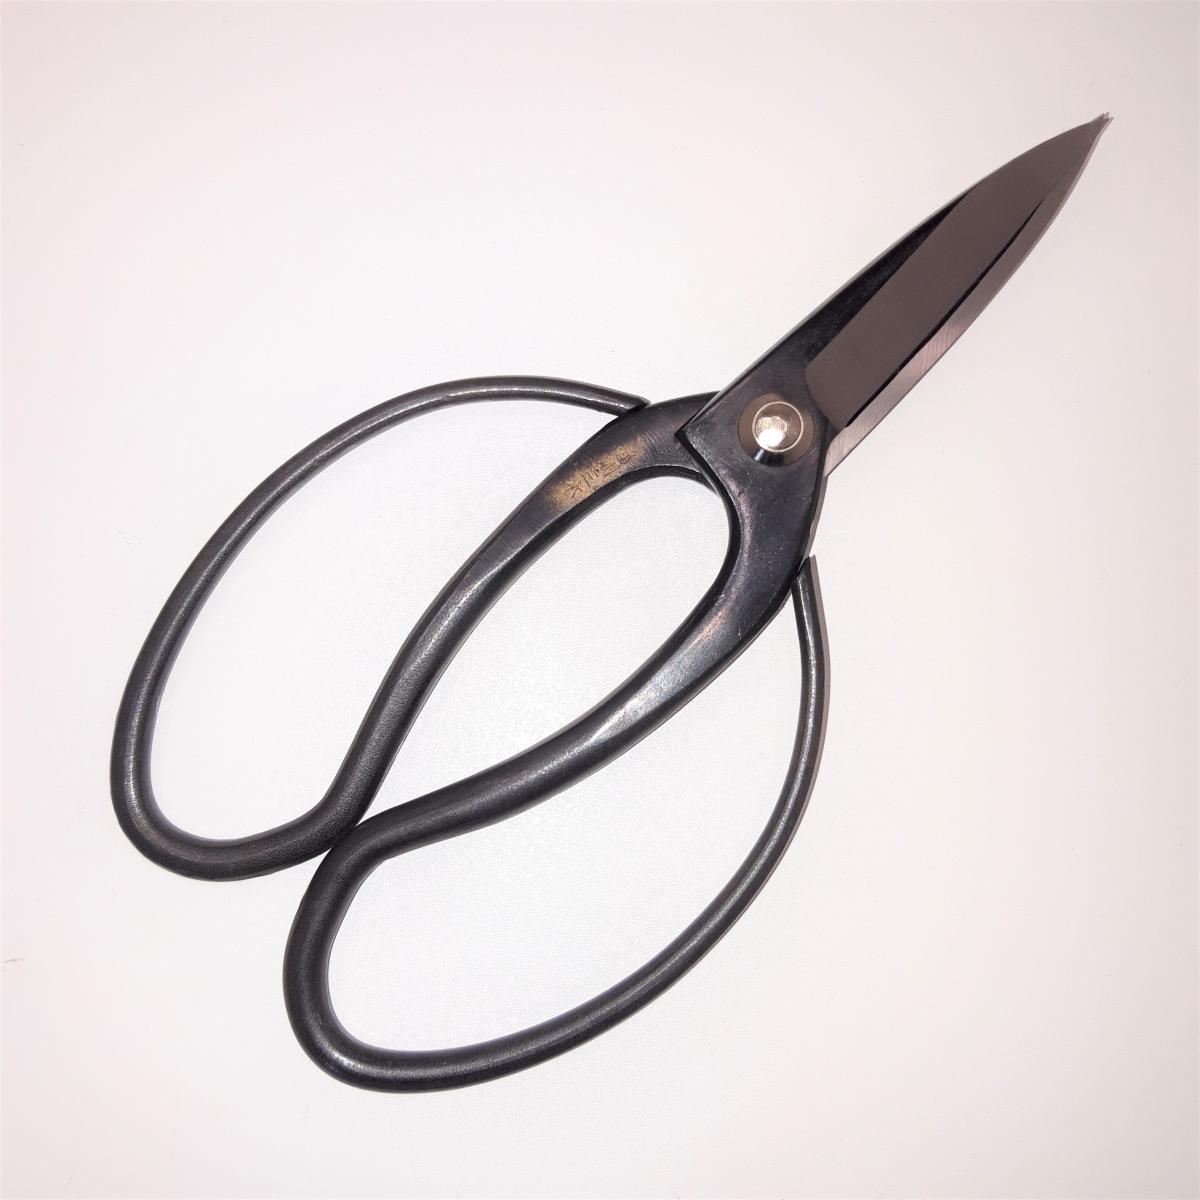 Japanese gardeners scissors, Ittoryu brand